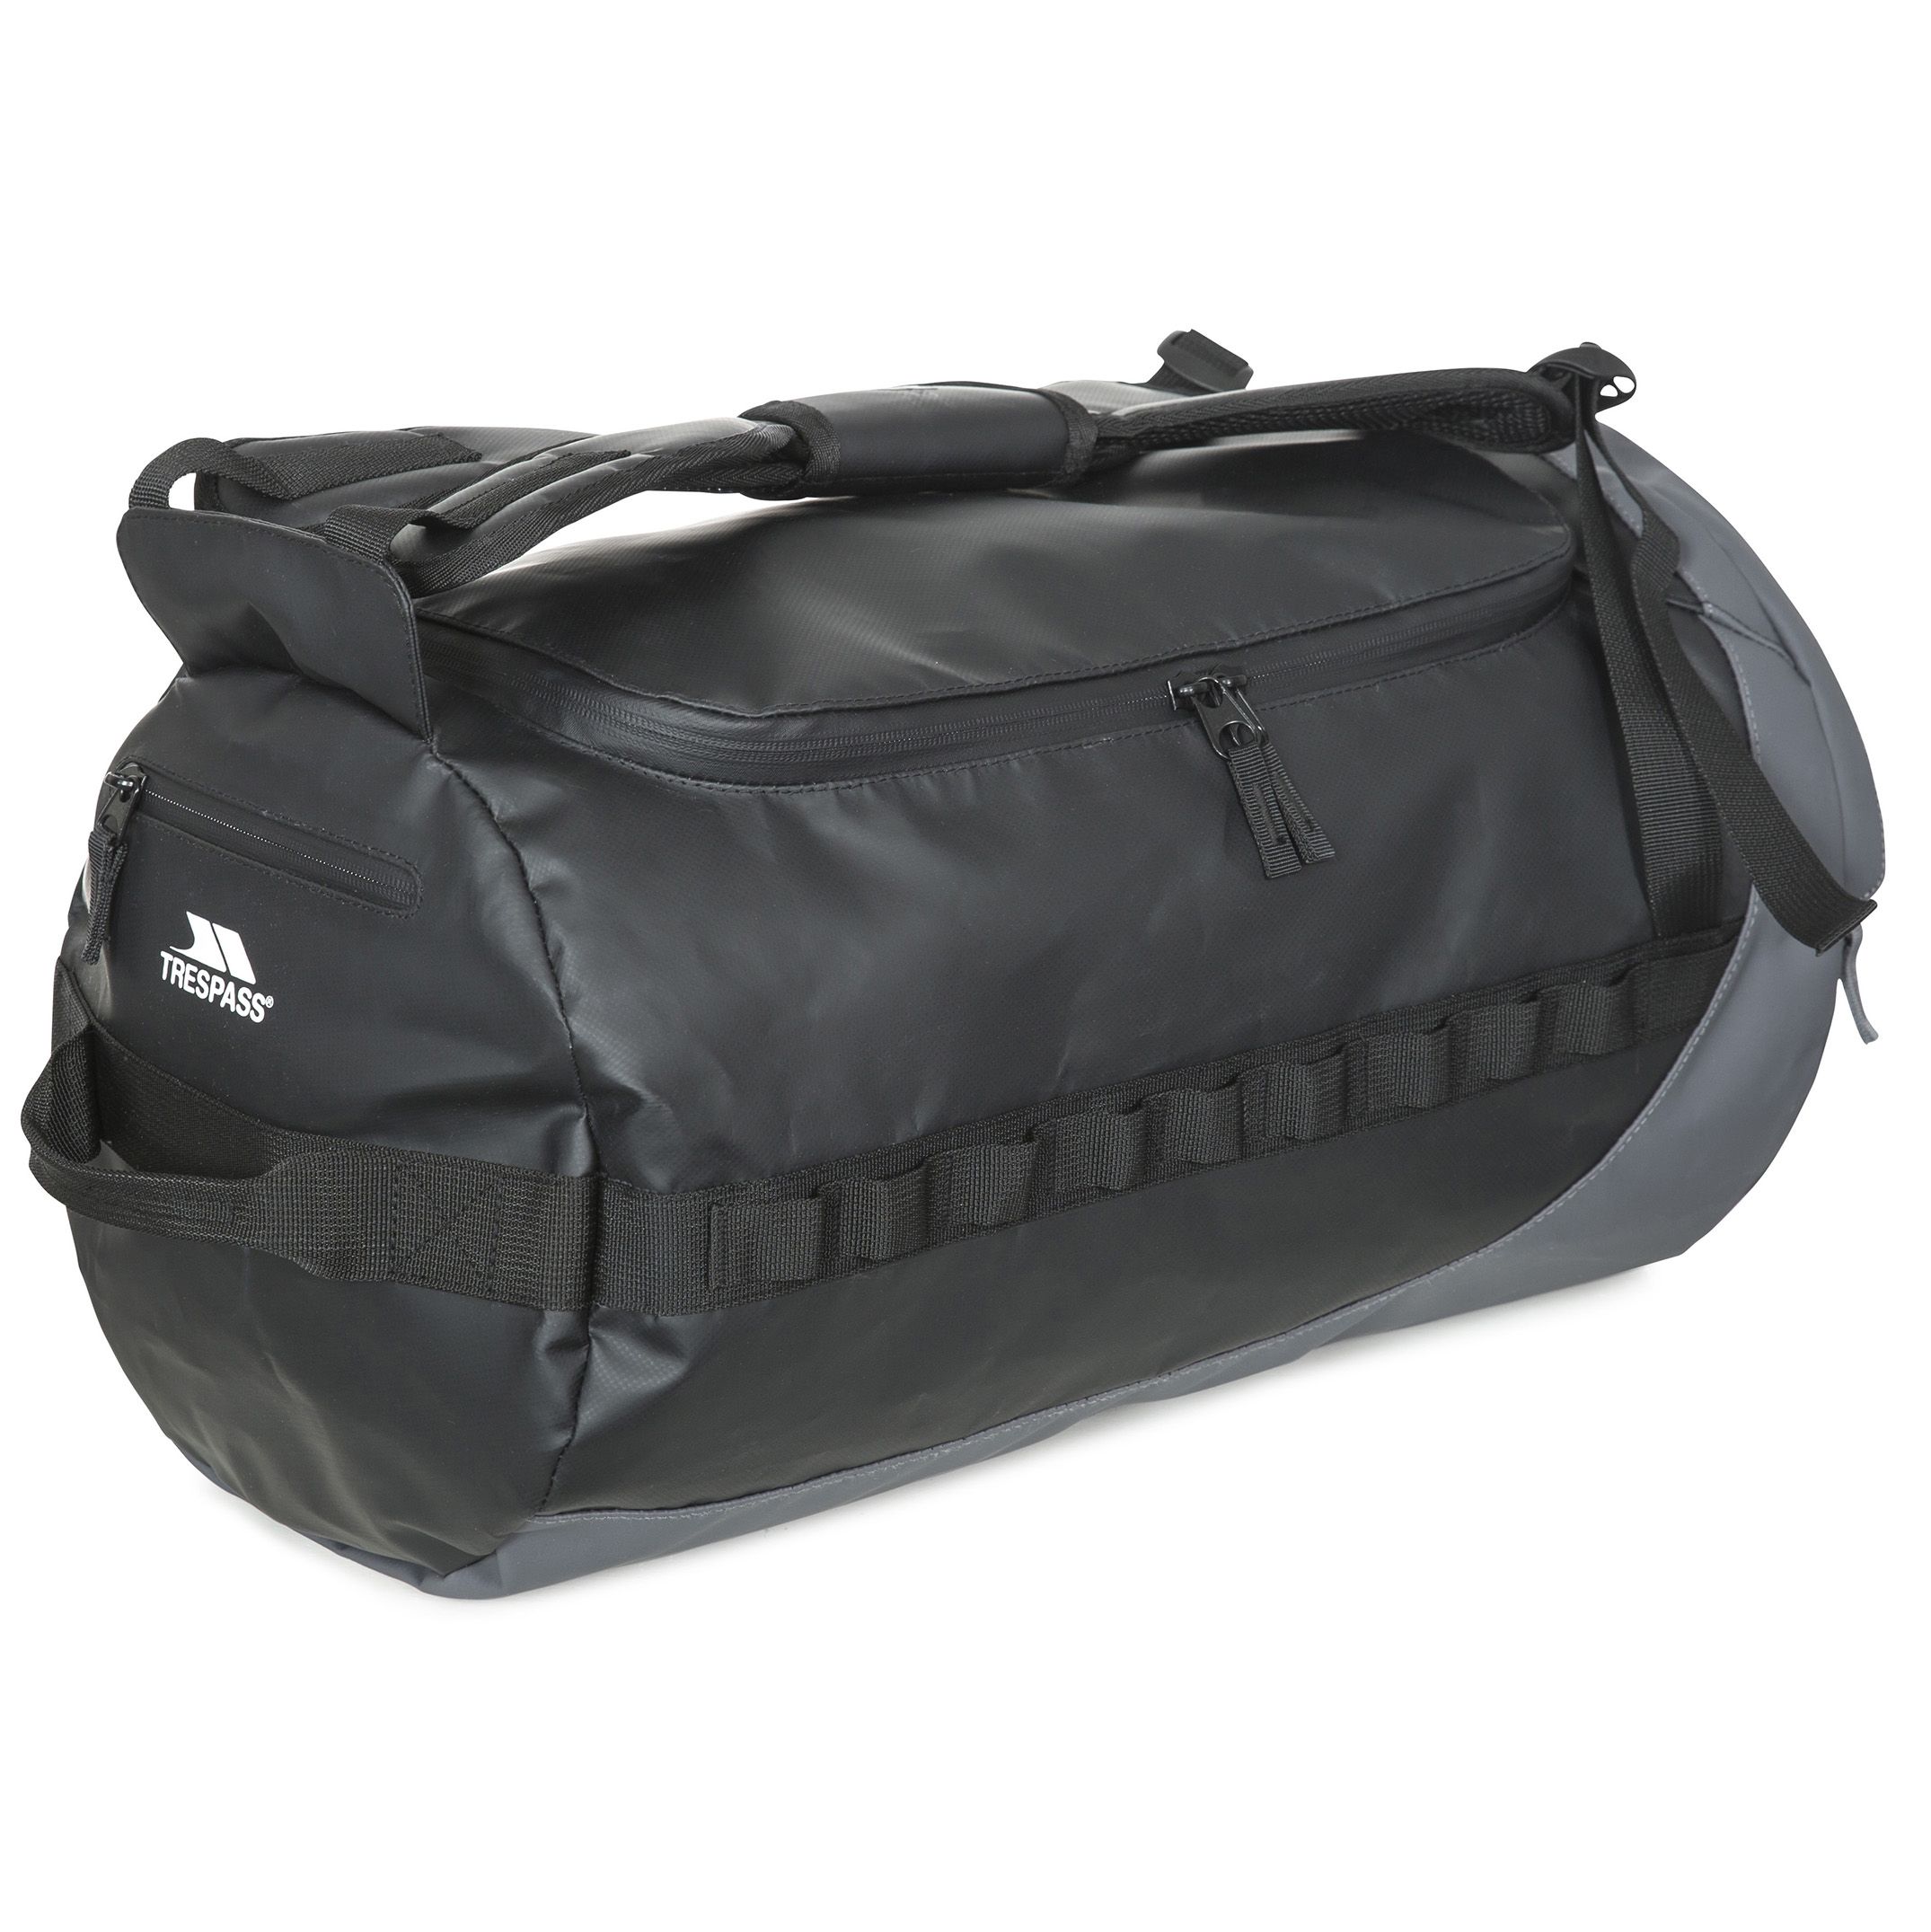 Blackfriar 40 - 40 Litre Water Resistant Duffle Bag